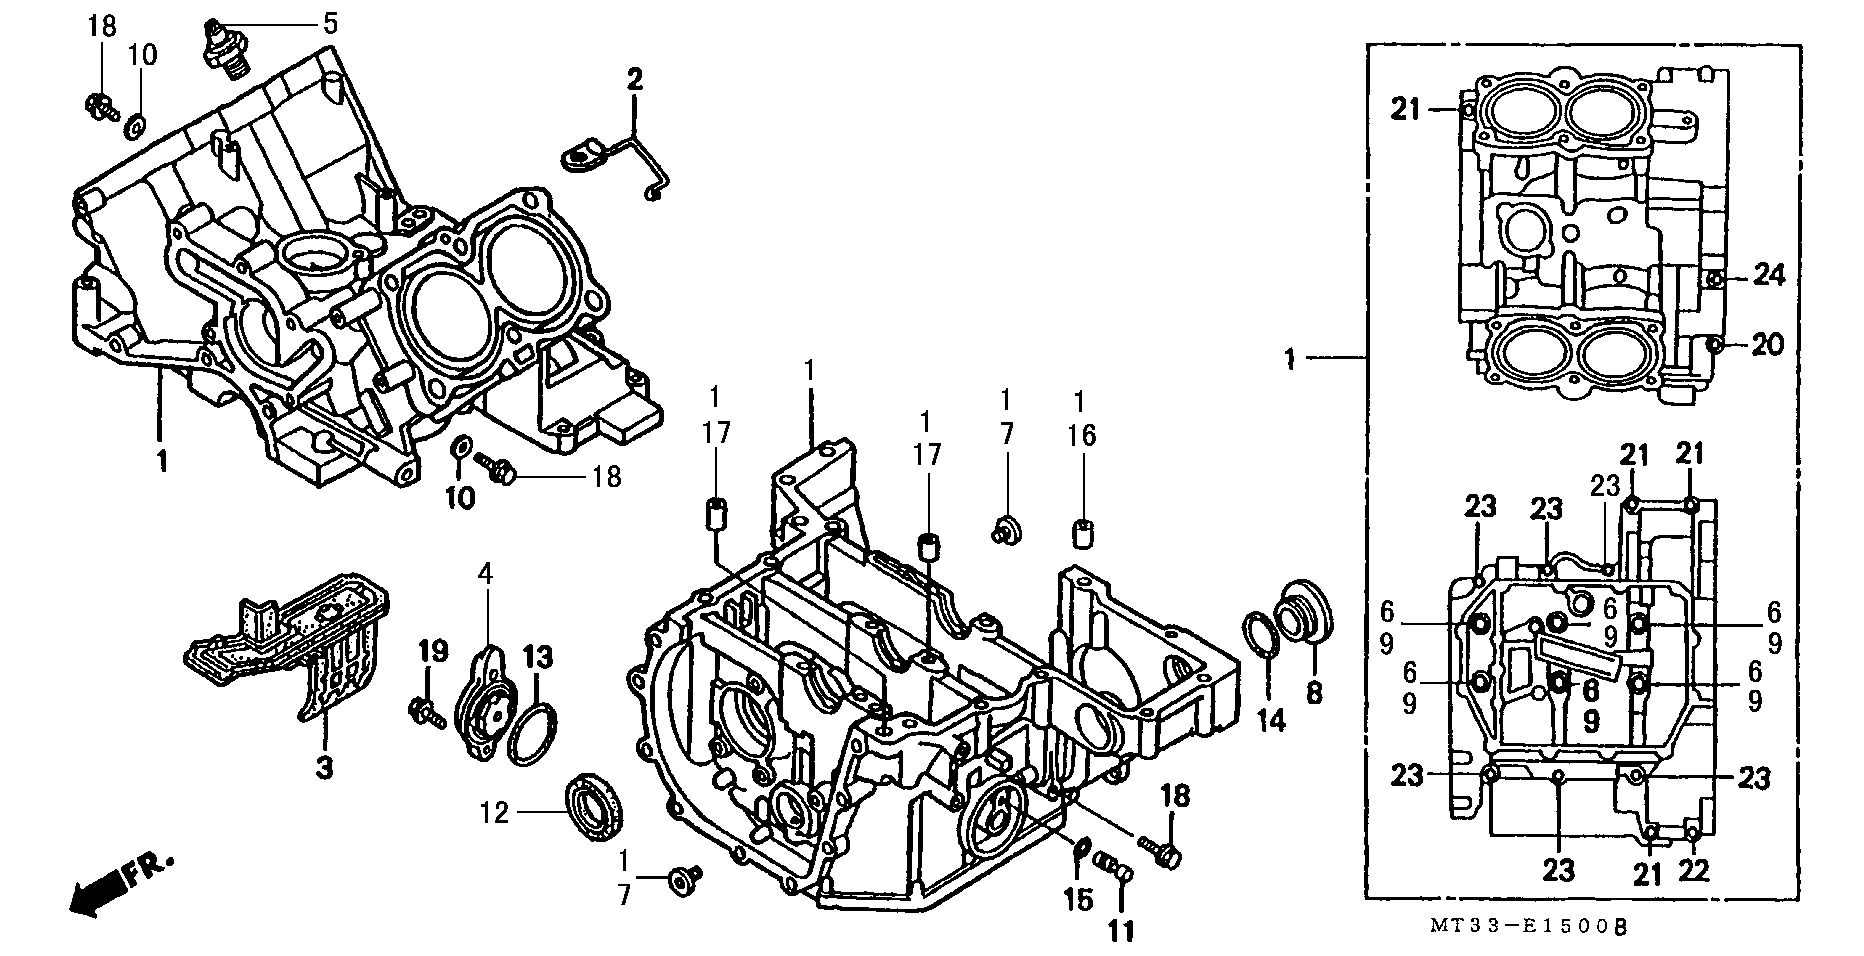 Parts fiche Crankcase ST1100